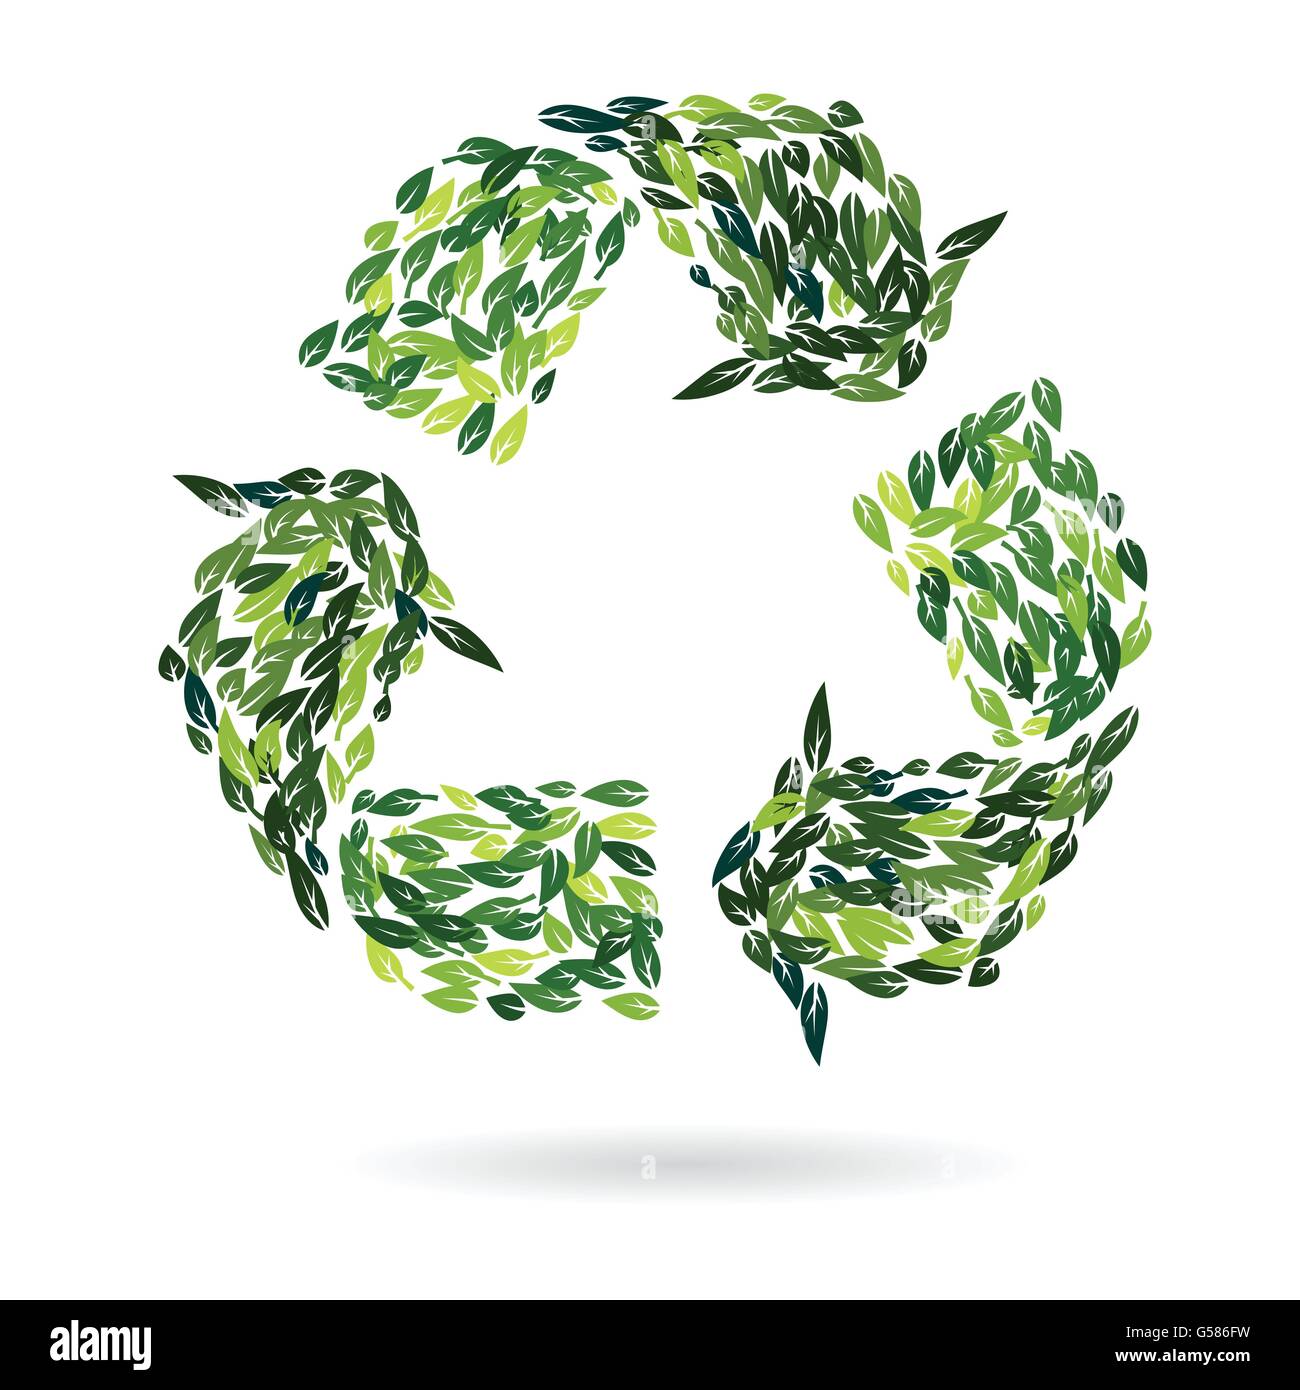 Recycling-Zeichen vom grünen Sommer Blätter als Umwelt Schutz Konzept-Vektor-Design-illustration Stock Vektor